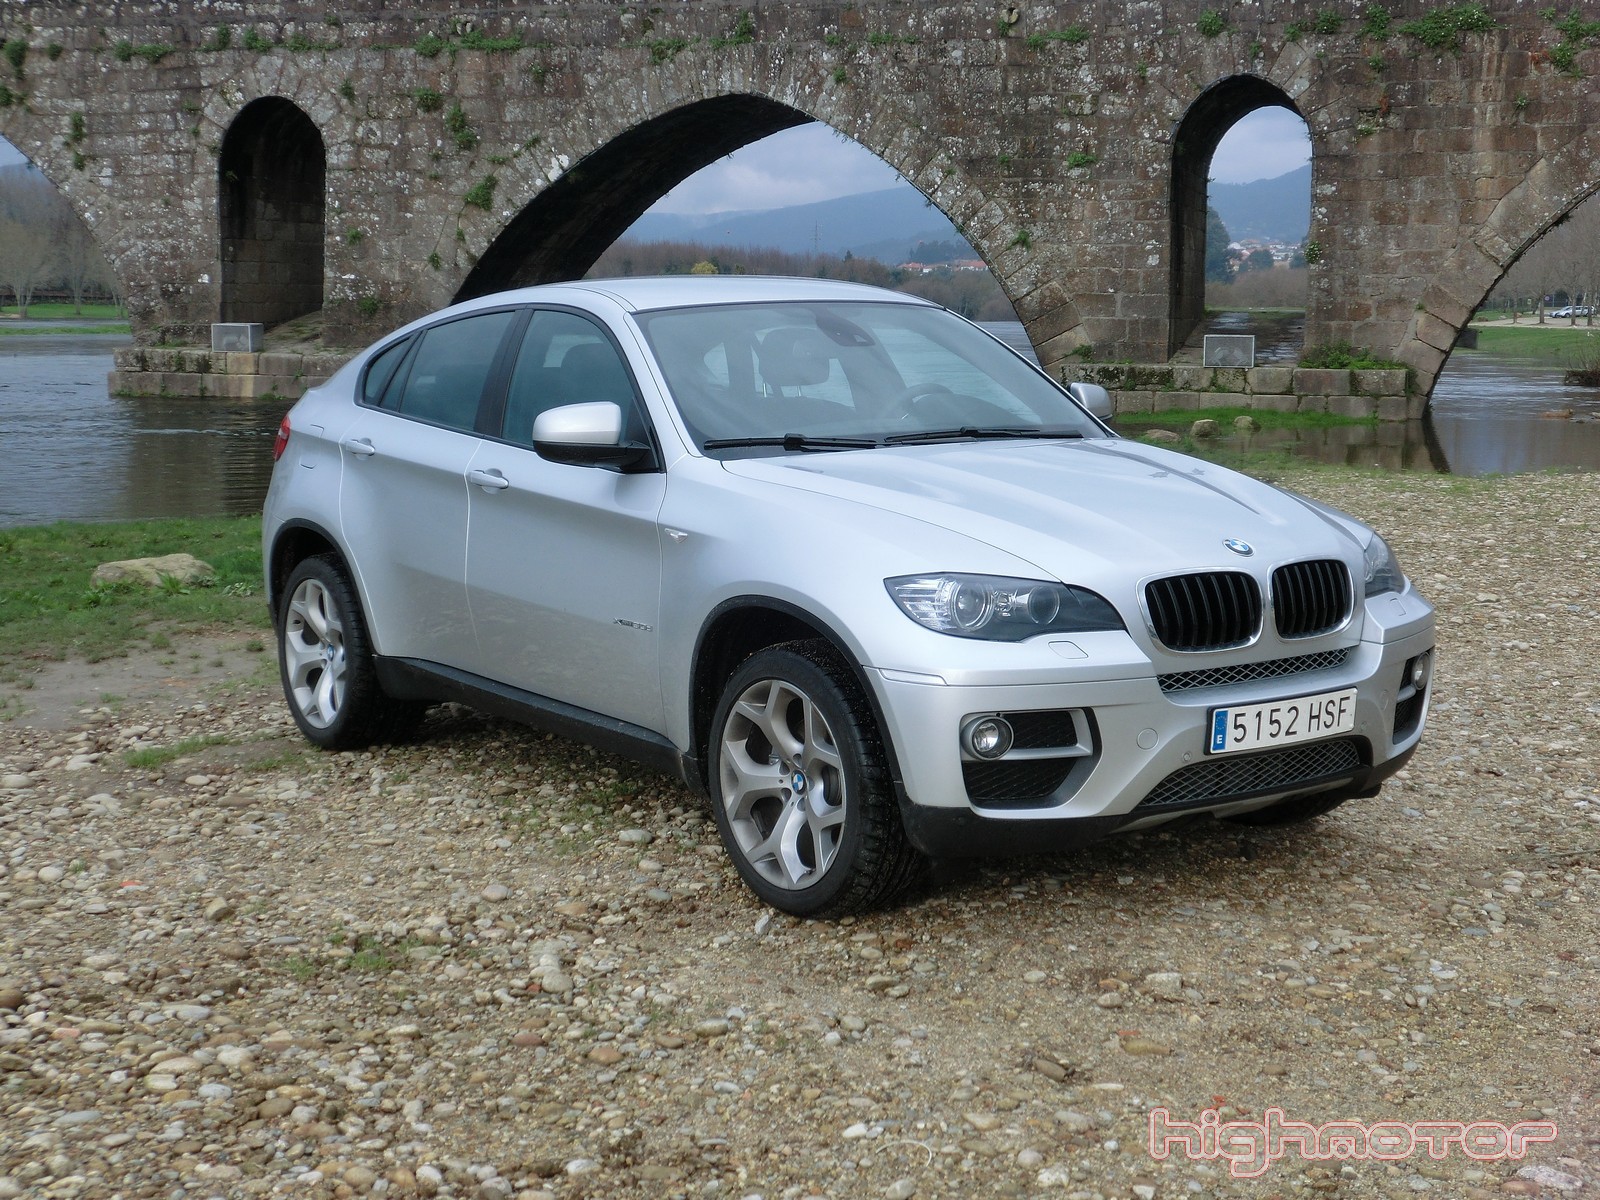 BMW X6 xDrive 30d  245 CV, prueba (Motor, prestaciones, comportamiento y consumo)